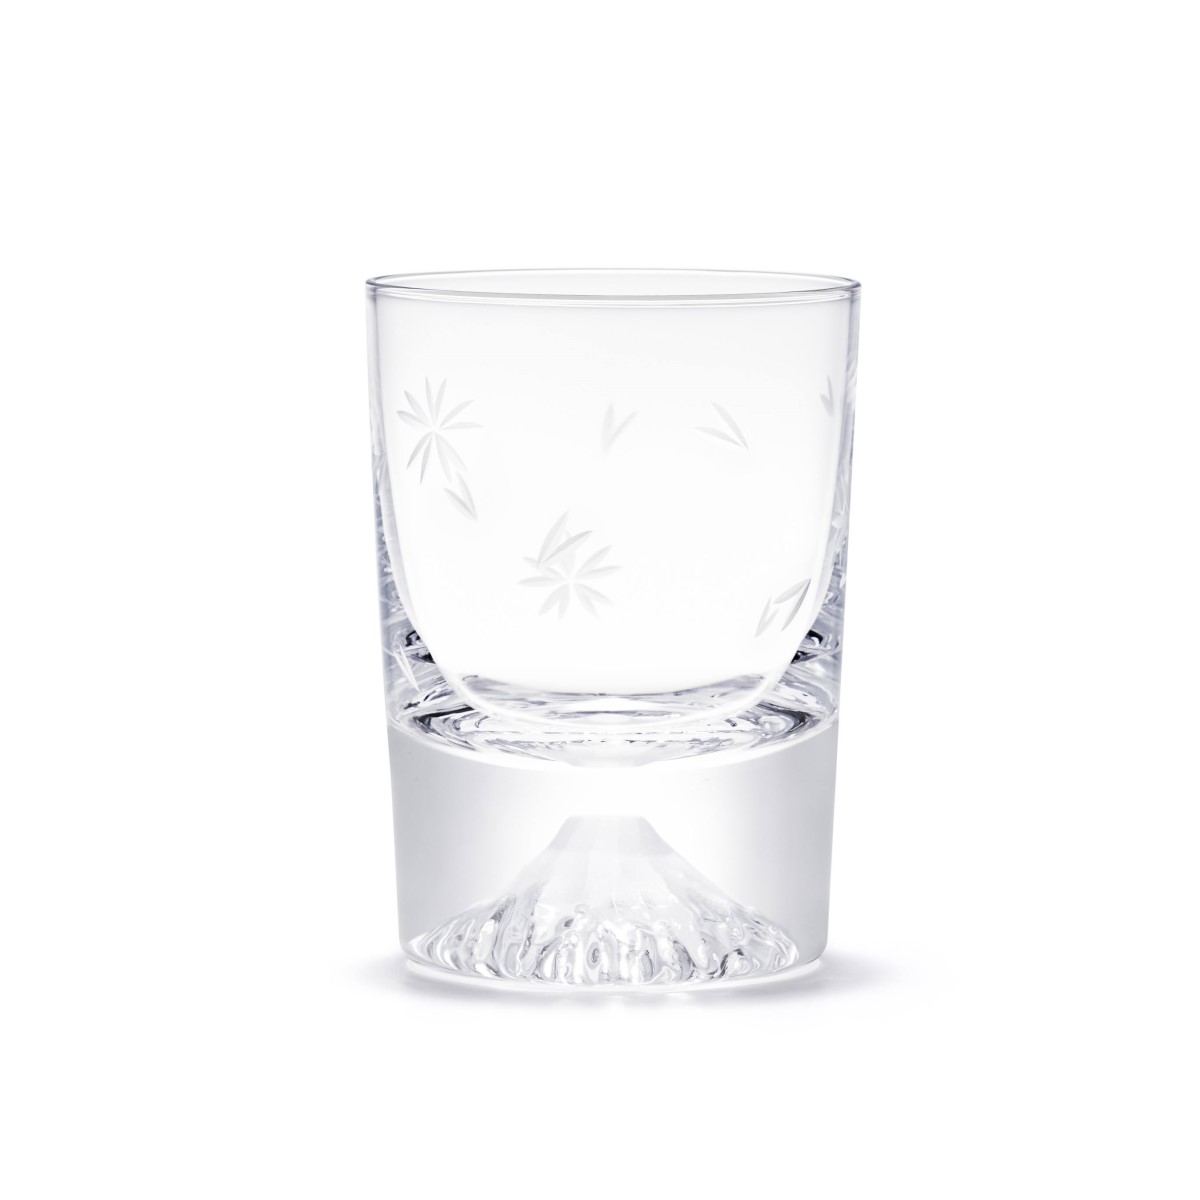 桜切子 富士山グラス 冷酒グラス TG20-015-CSS